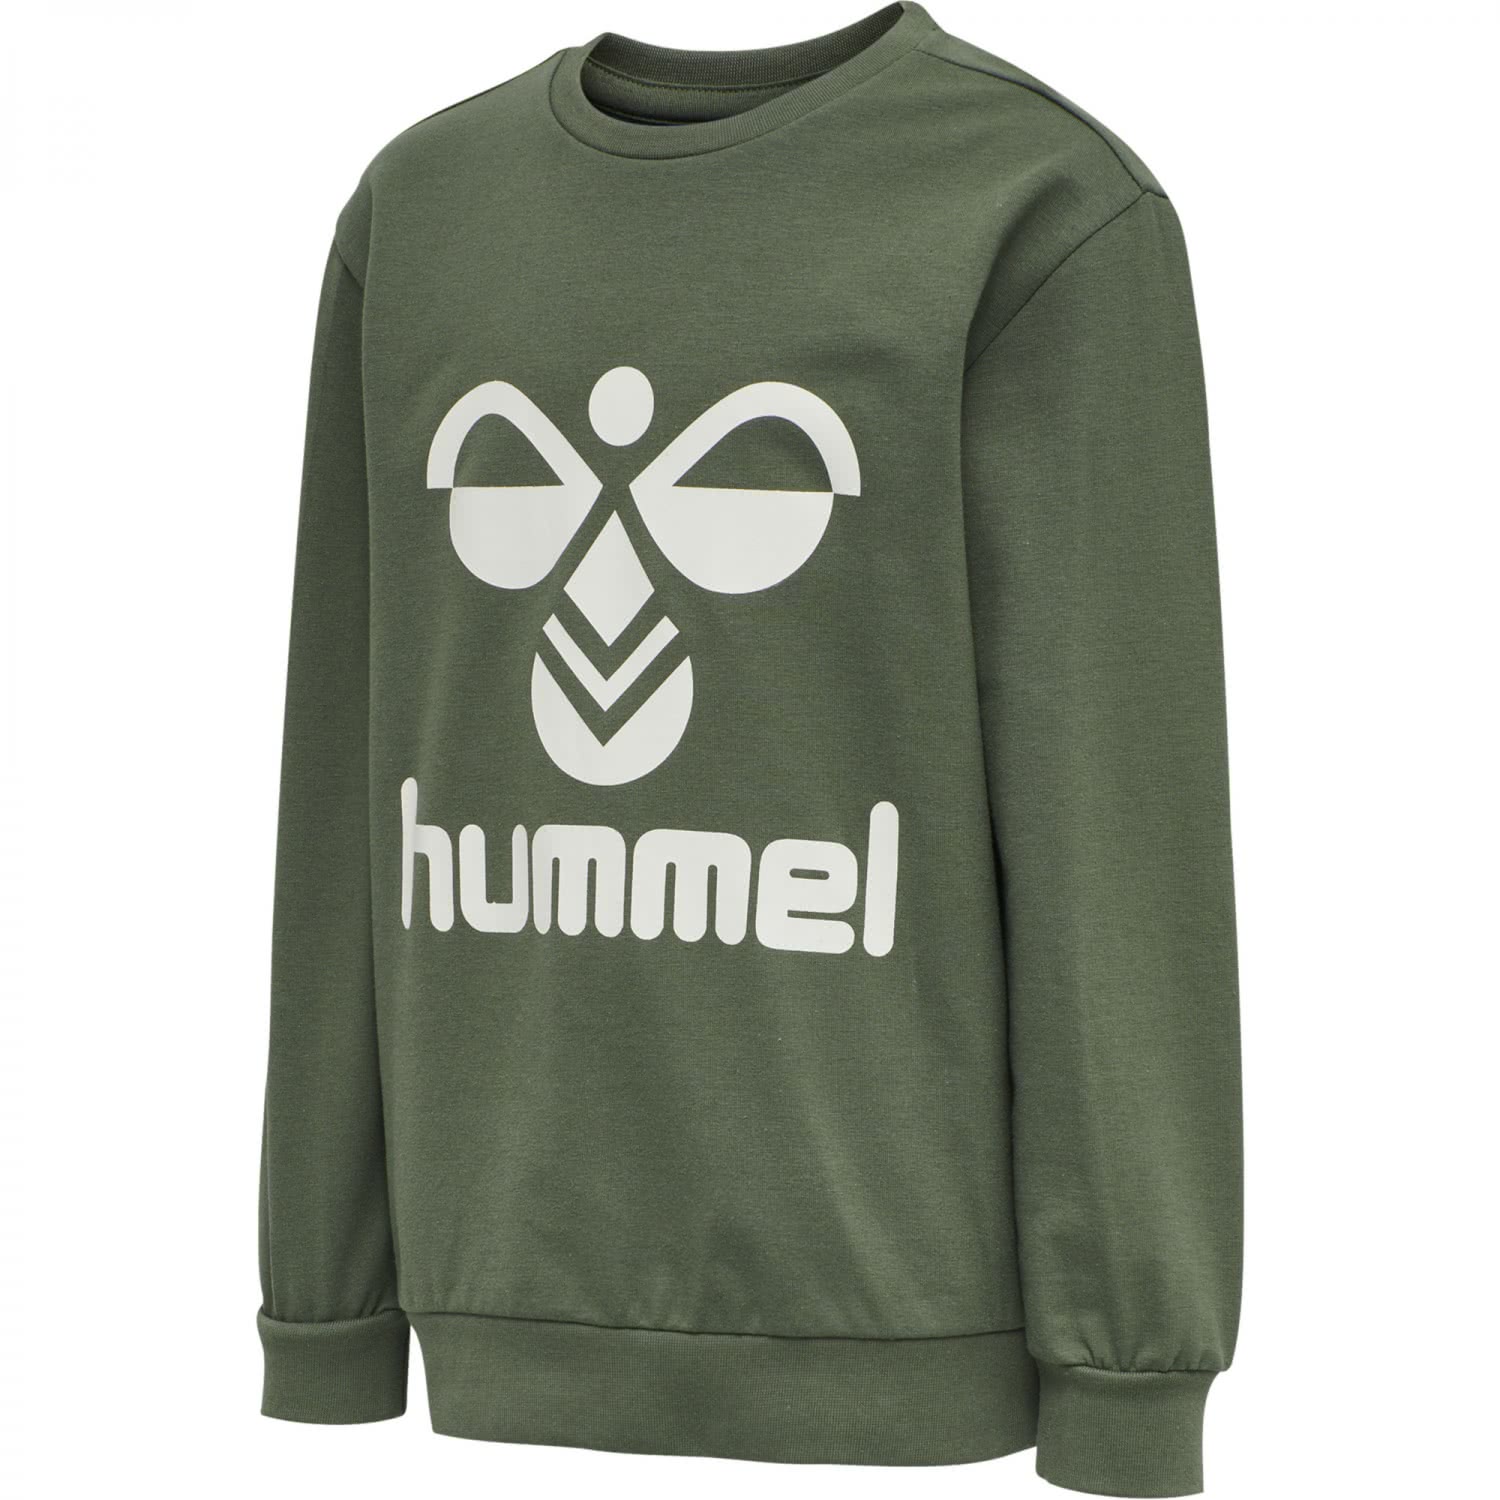 Sweatshirt Kinder 203659 Dos | eBay Hummel